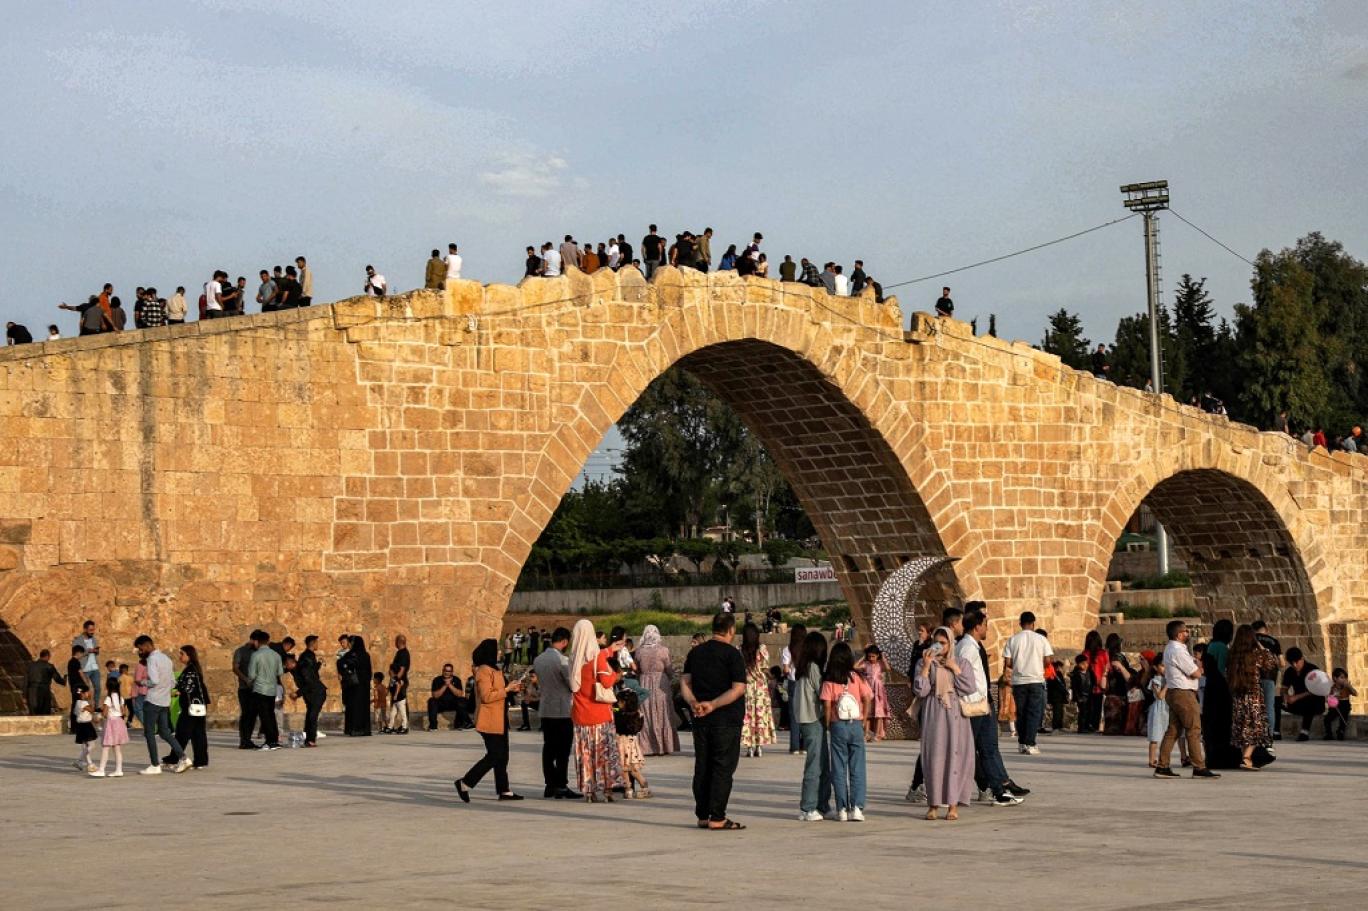 يتجمع الناس على جسر العباسيين («جسر دلال» باللغة الكردية) عبر نهر الخابور في مدينة زاخو بإقليم كردستان شمال العراق (أ ف ب).jpg